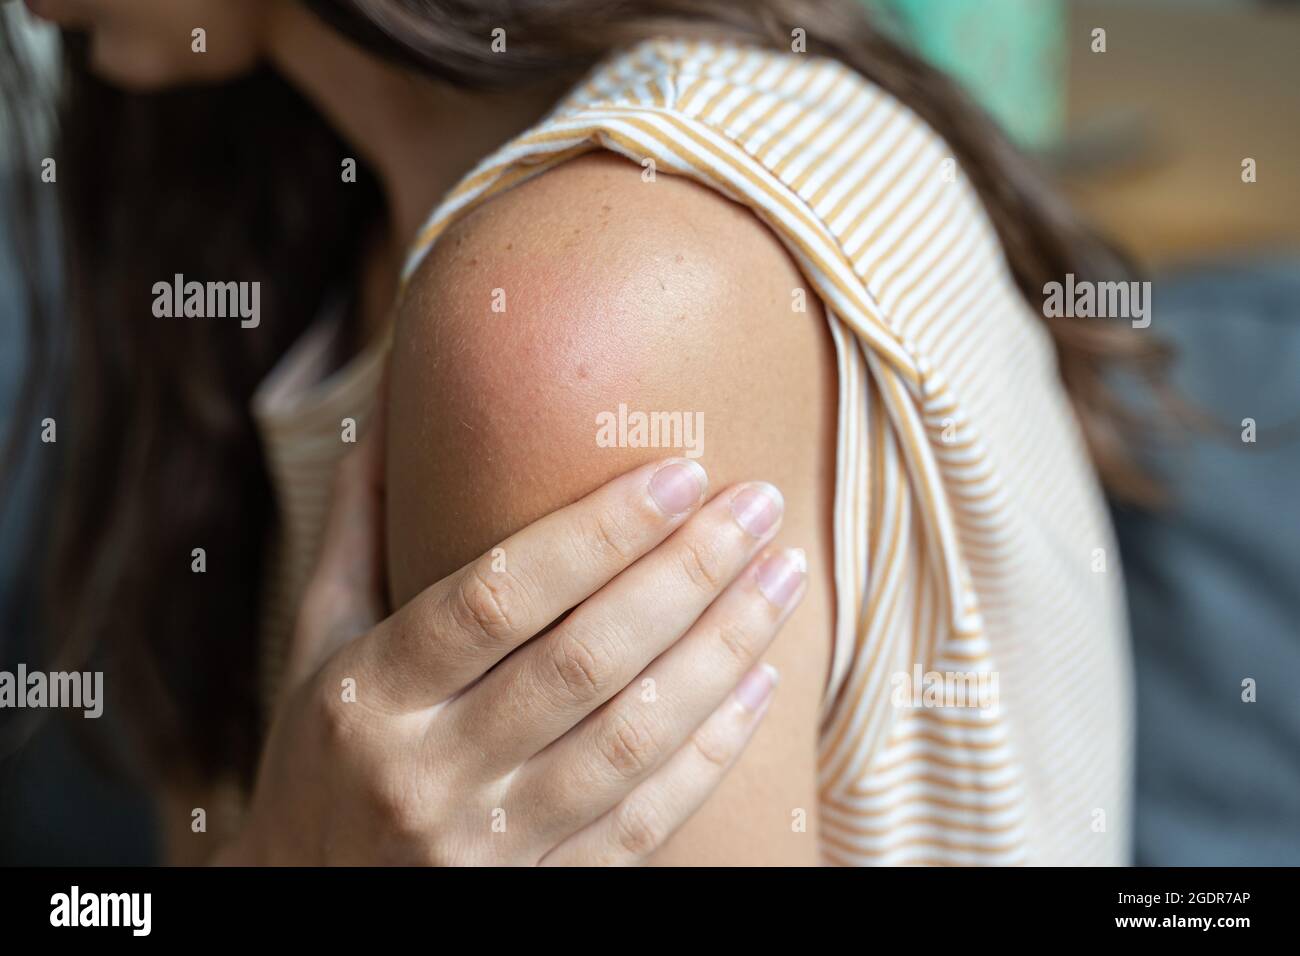 Effet secondaire du vaccin - rougeur et douleur de la peau de l'épaule. Réaction de vaccination Covid-19. La peau de la femme démange et gonfle après la vaccination Banque D'Images